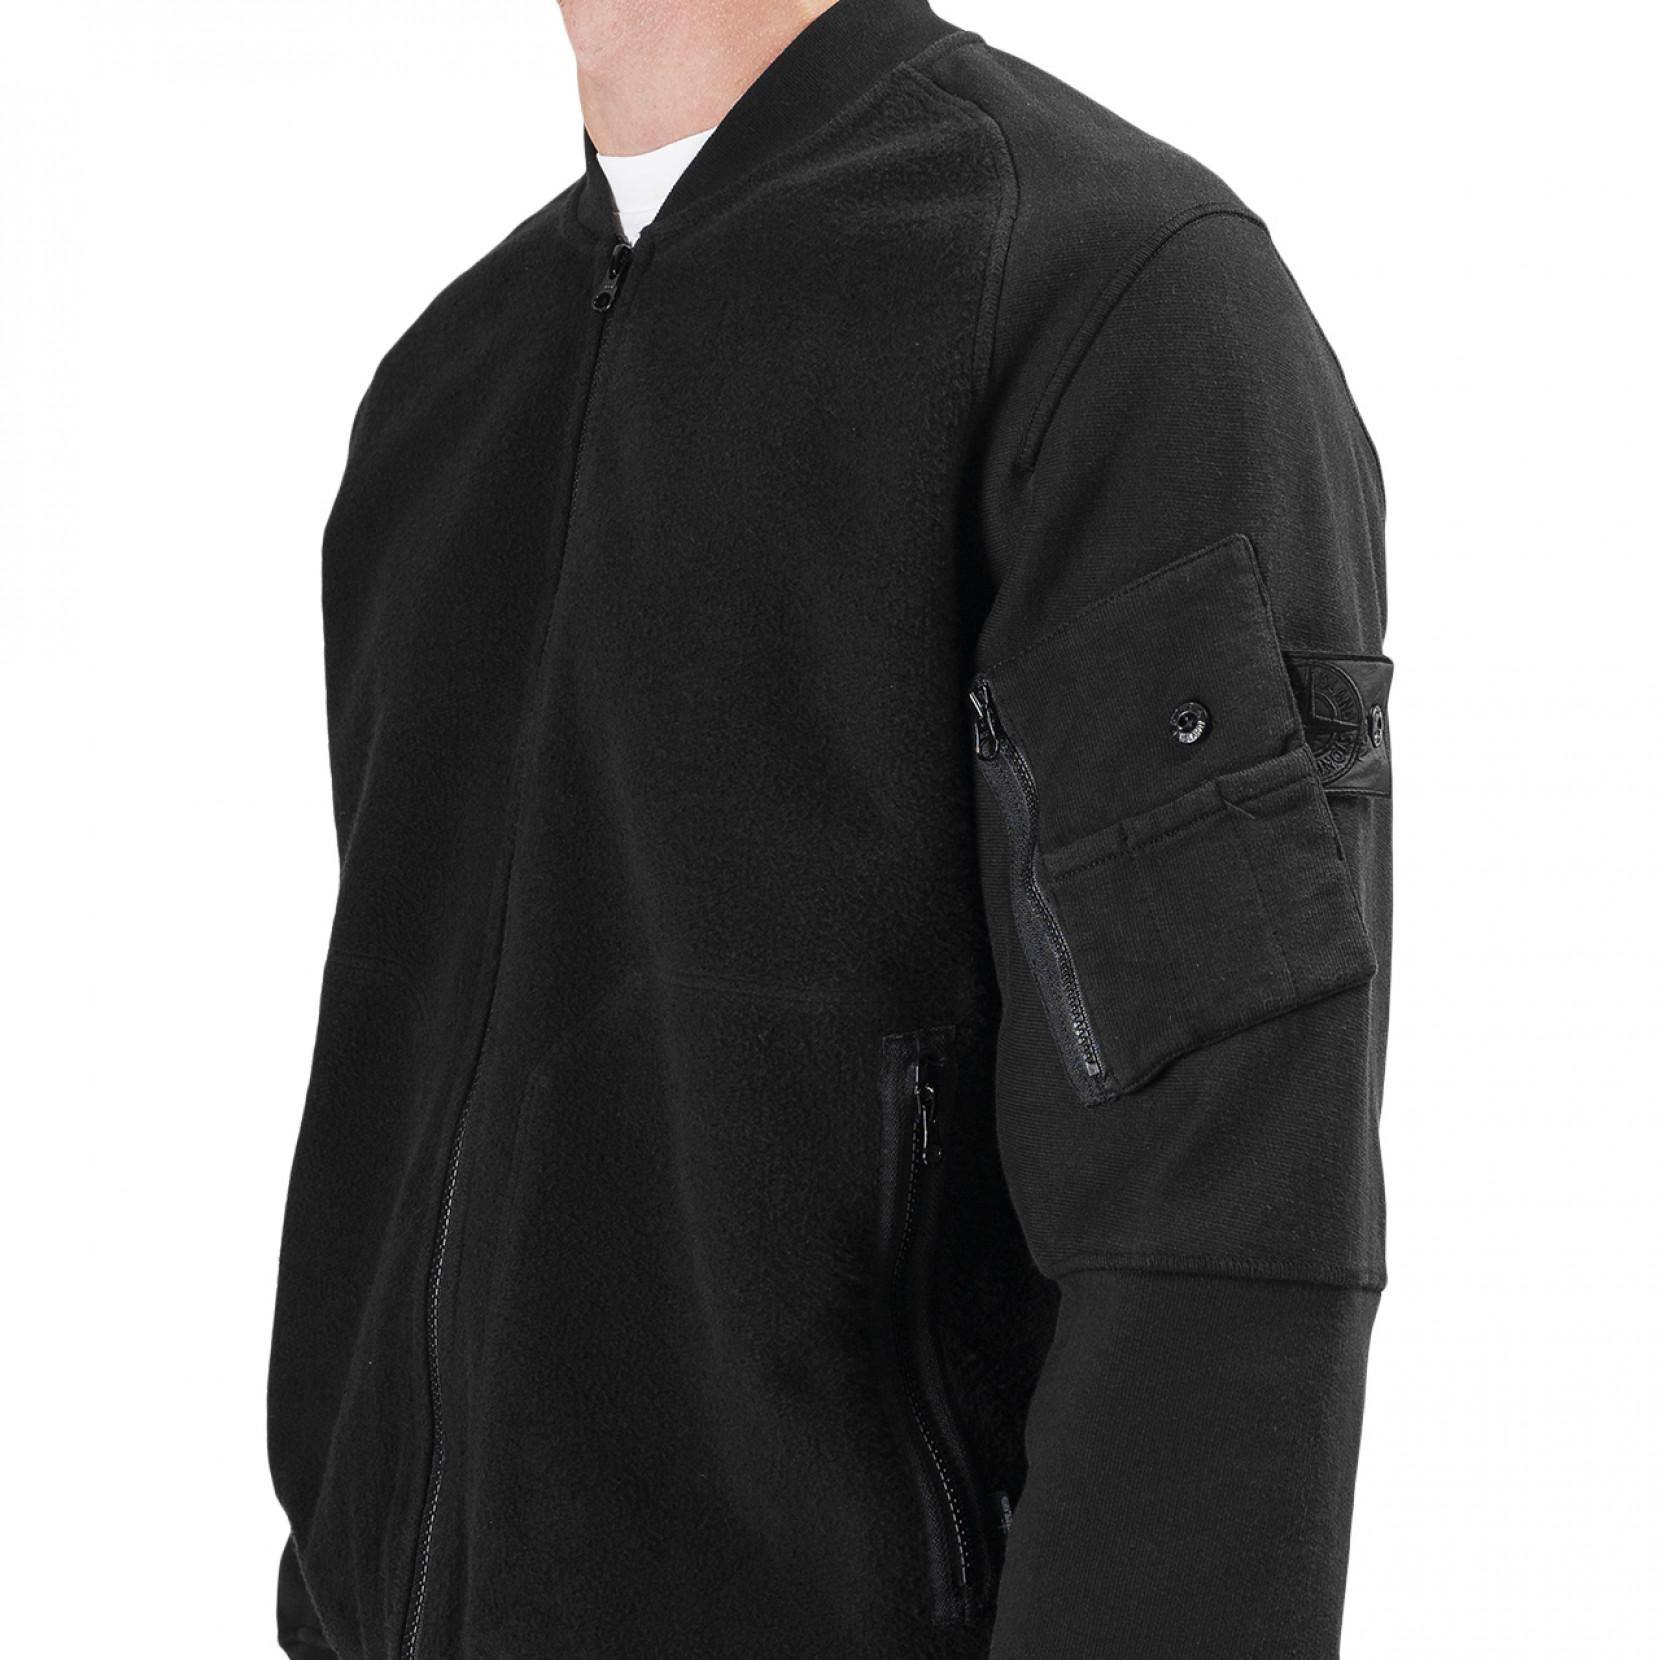 Stone Island Shadow Project Fleece Bomber Jacket in Black for Men - Lyst